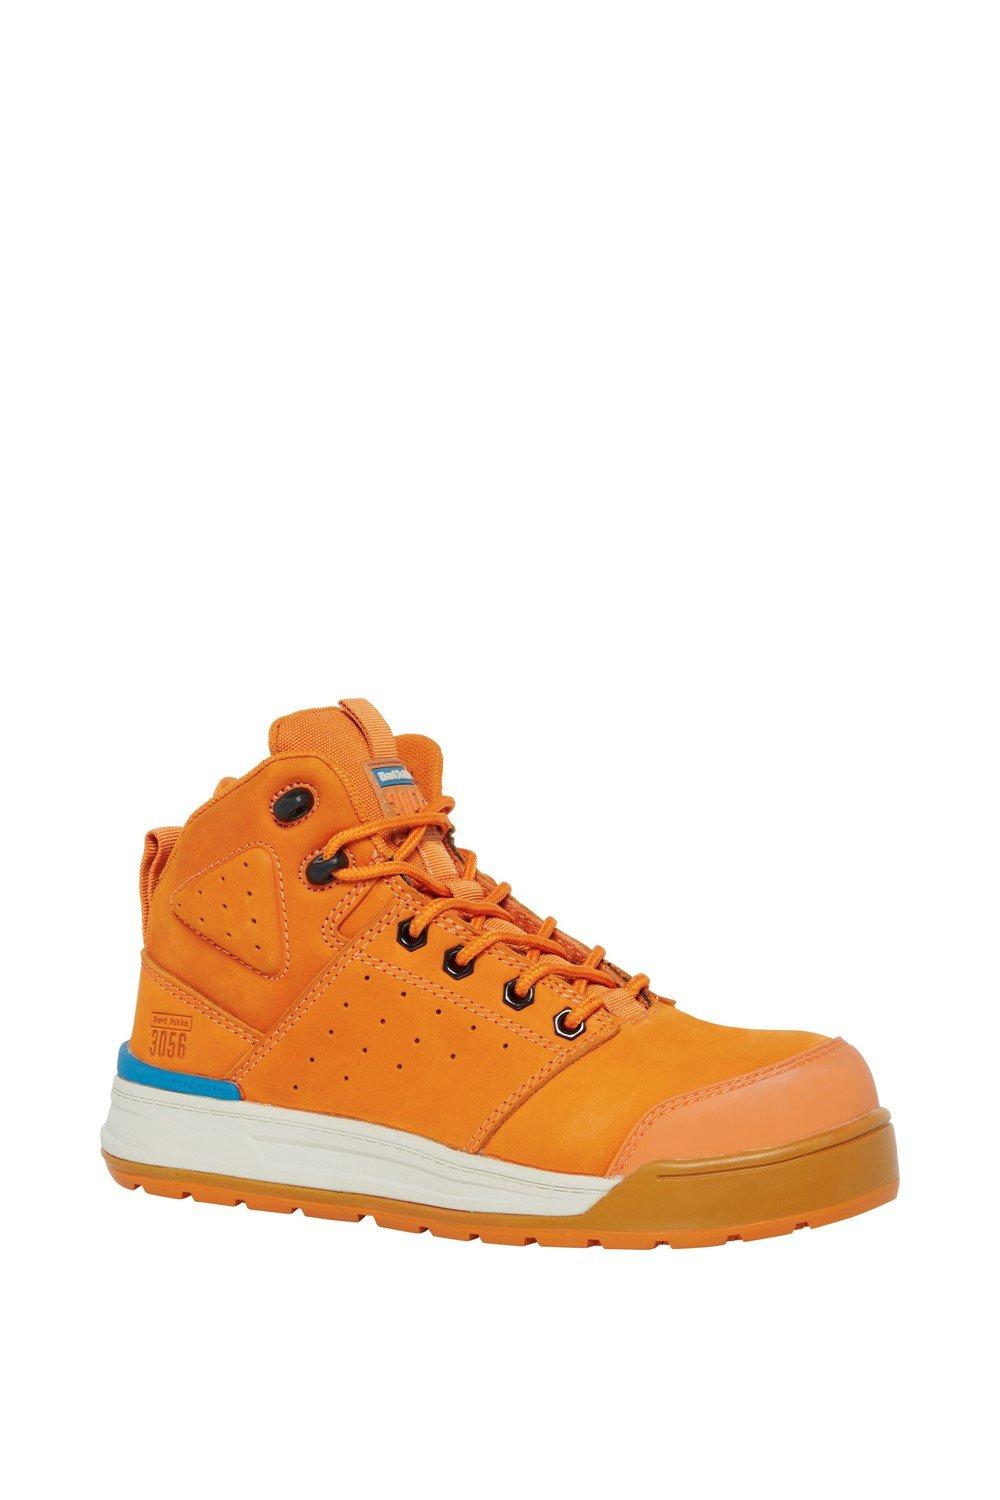 3056 PR Защитные ботинки с боковой молнией Hard Yakka, оранжевый